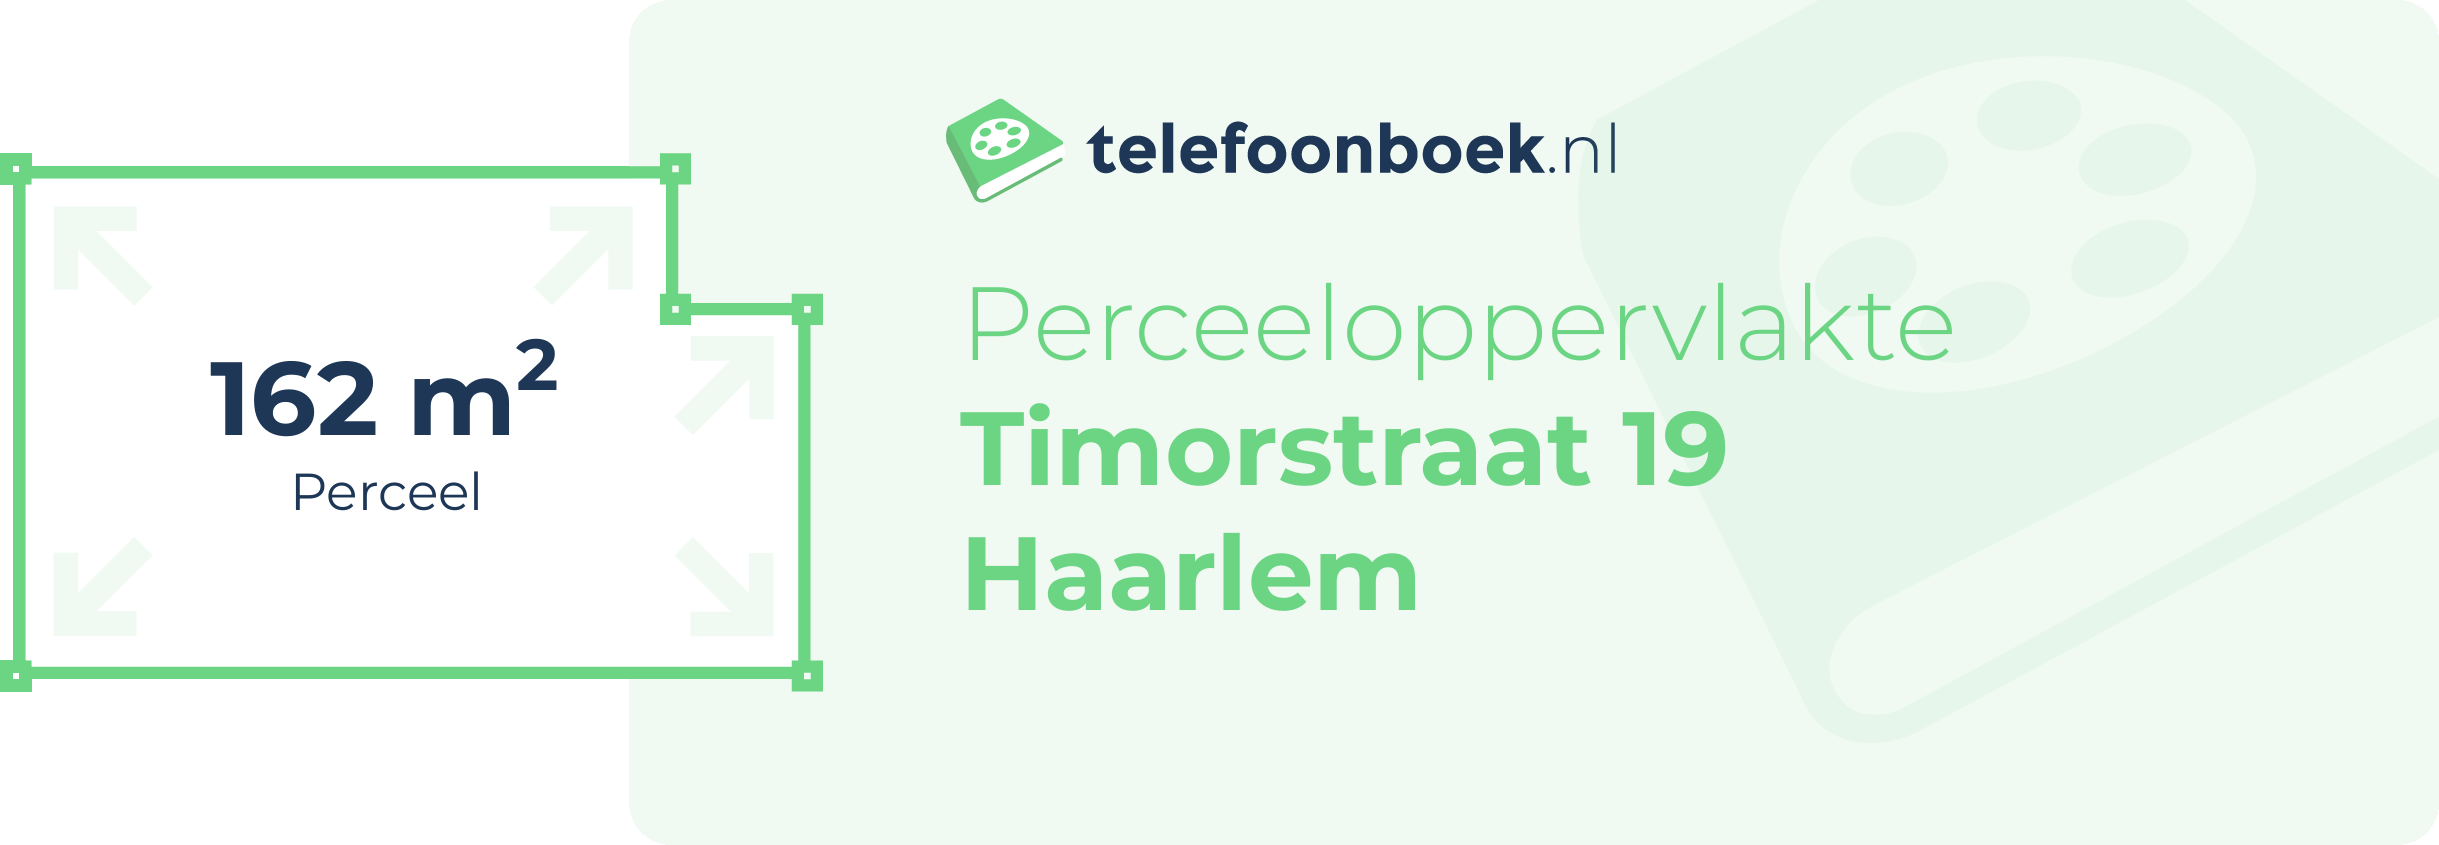 Perceeloppervlakte Timorstraat 19 Haarlem